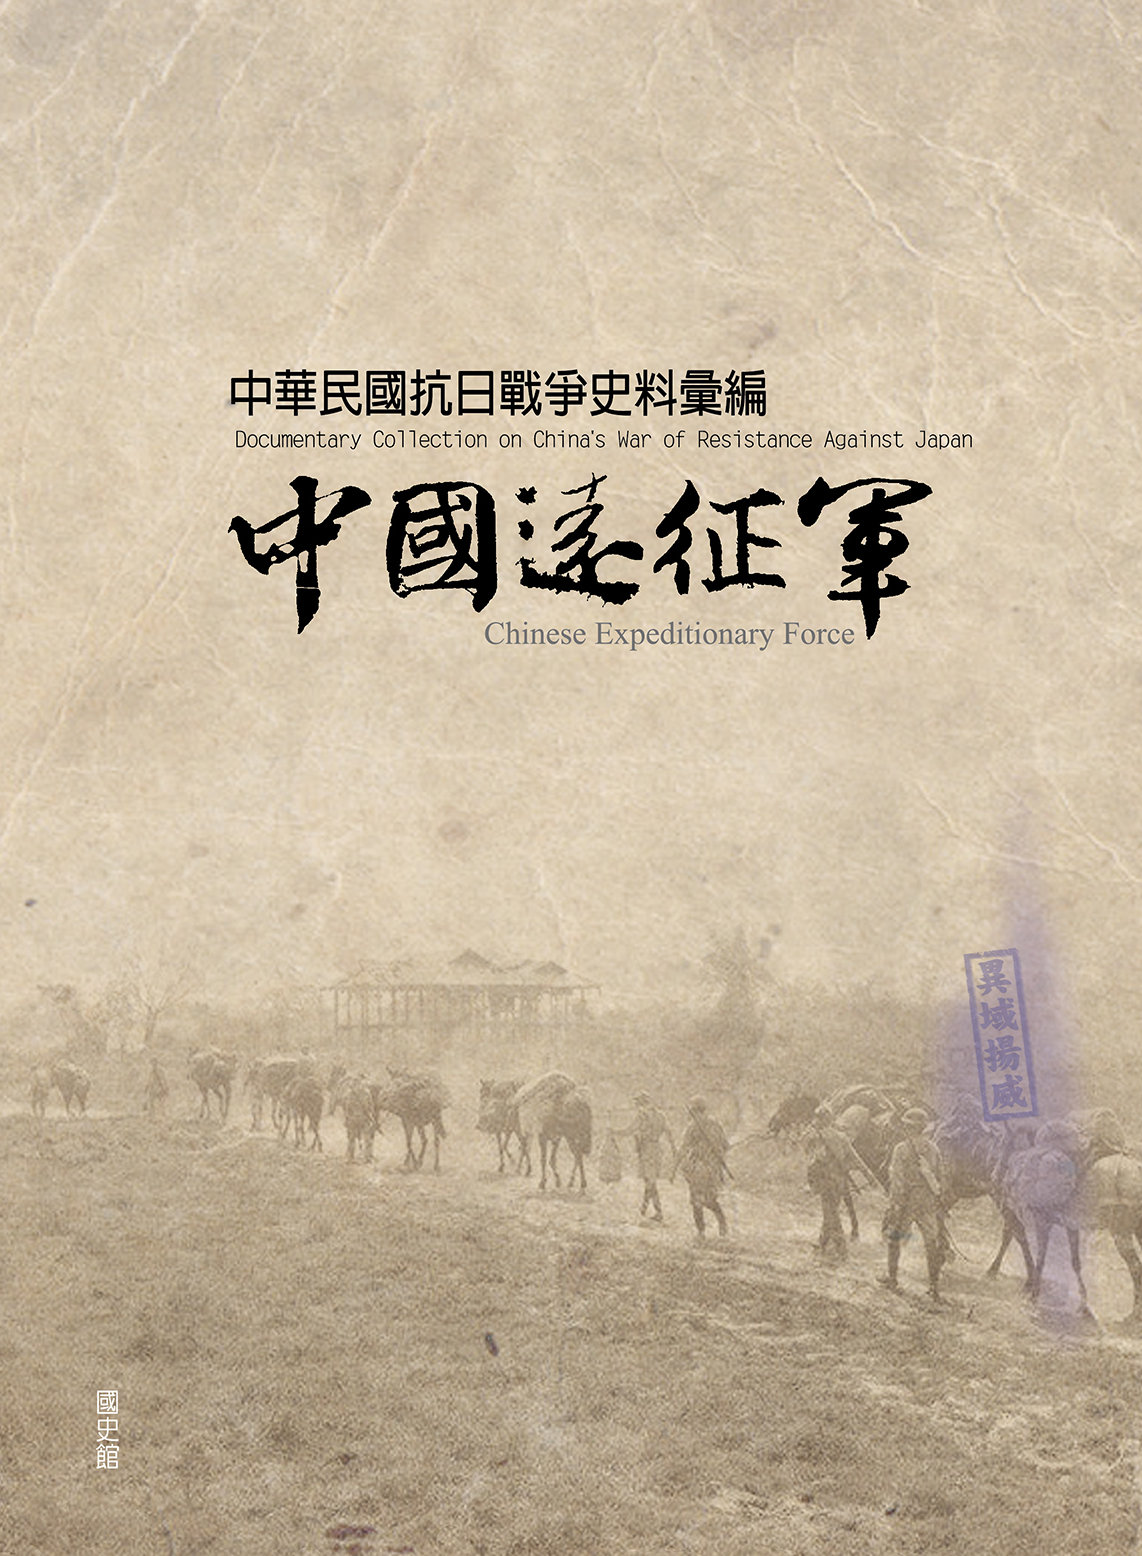 中華民國抗日戰爭史料彙編-中國遠征軍